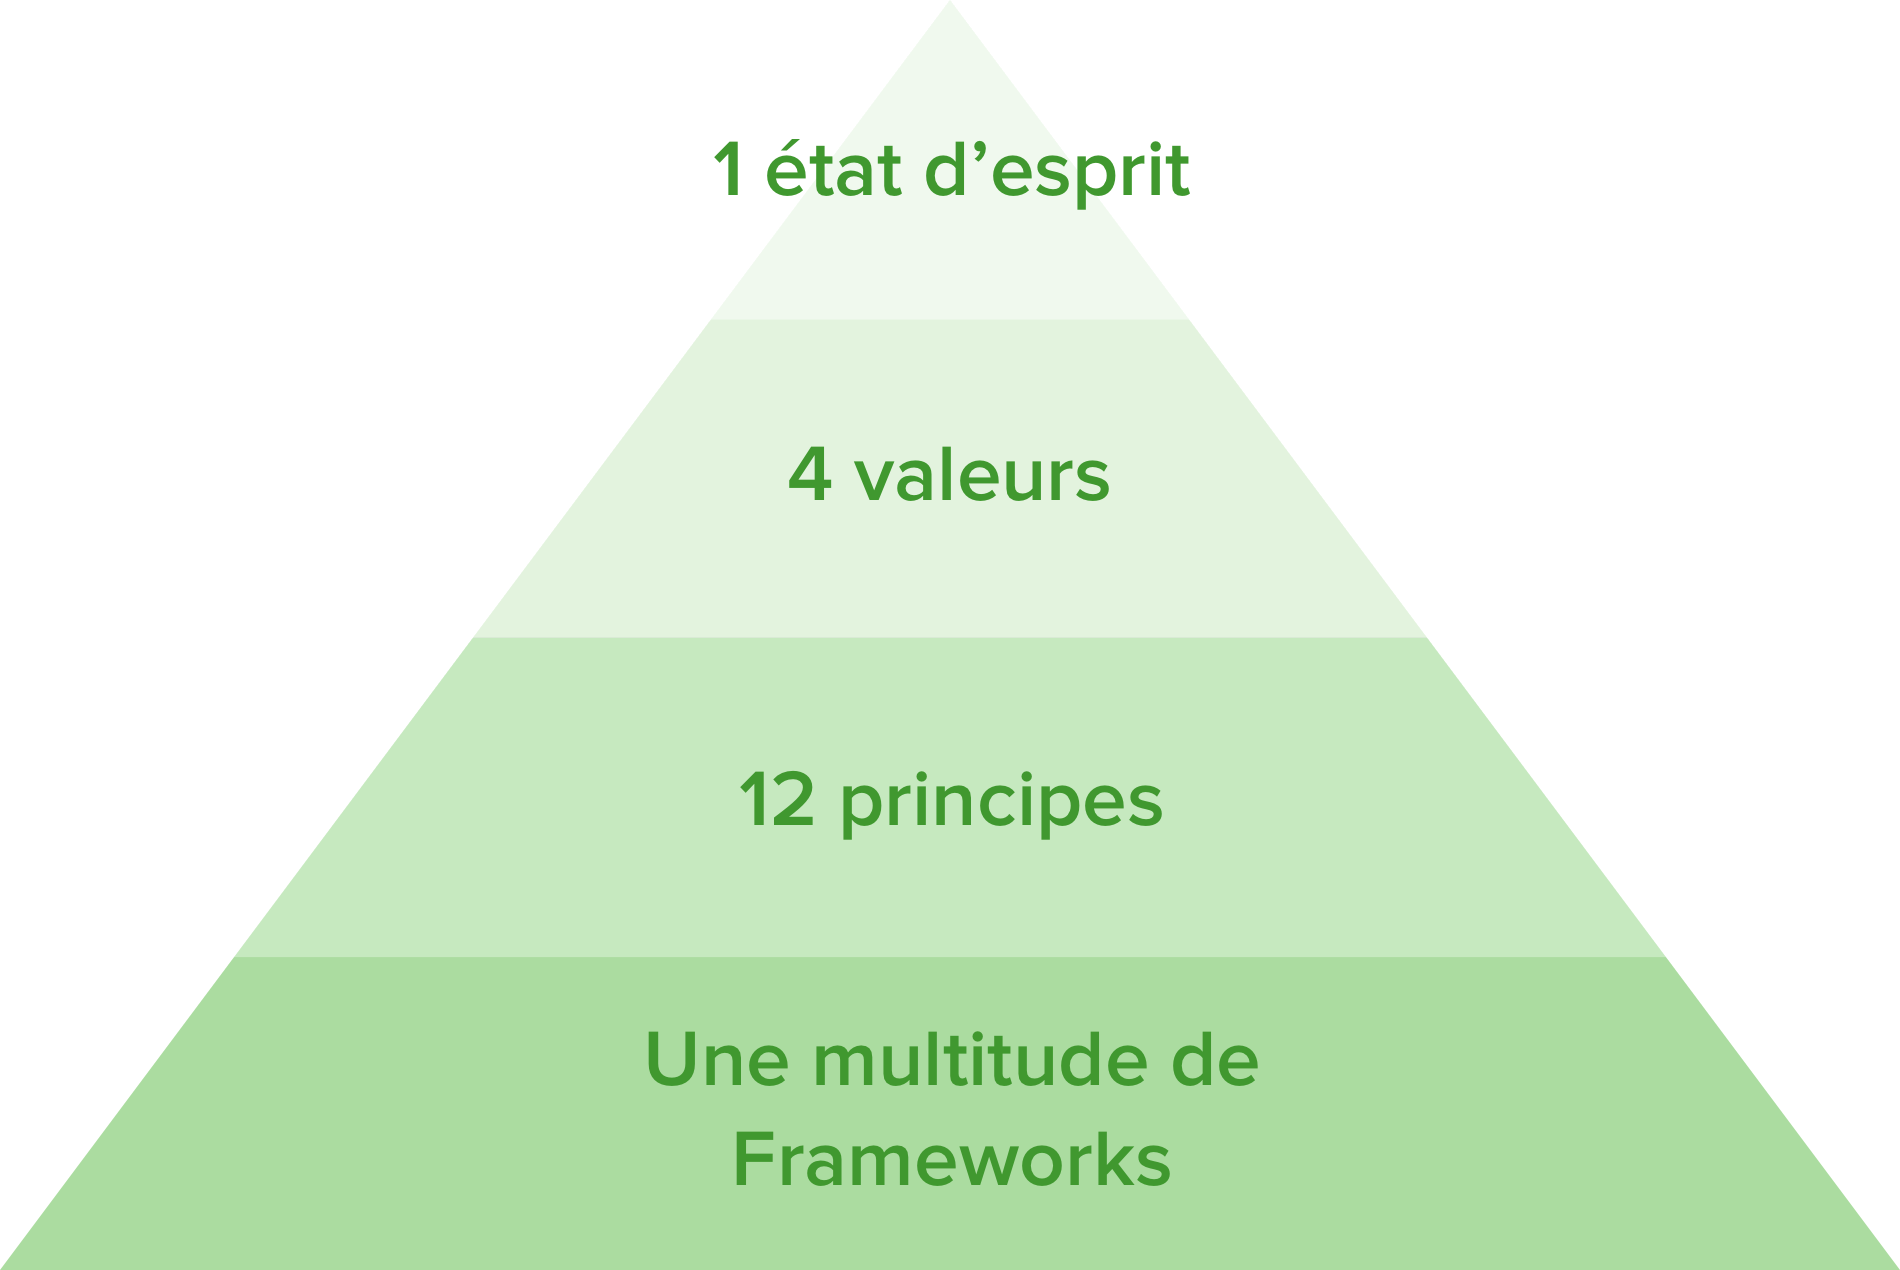 L'état d'esprit Agile s'appuie sur les quatre valeurs et les douze principes du Manifeste Agile